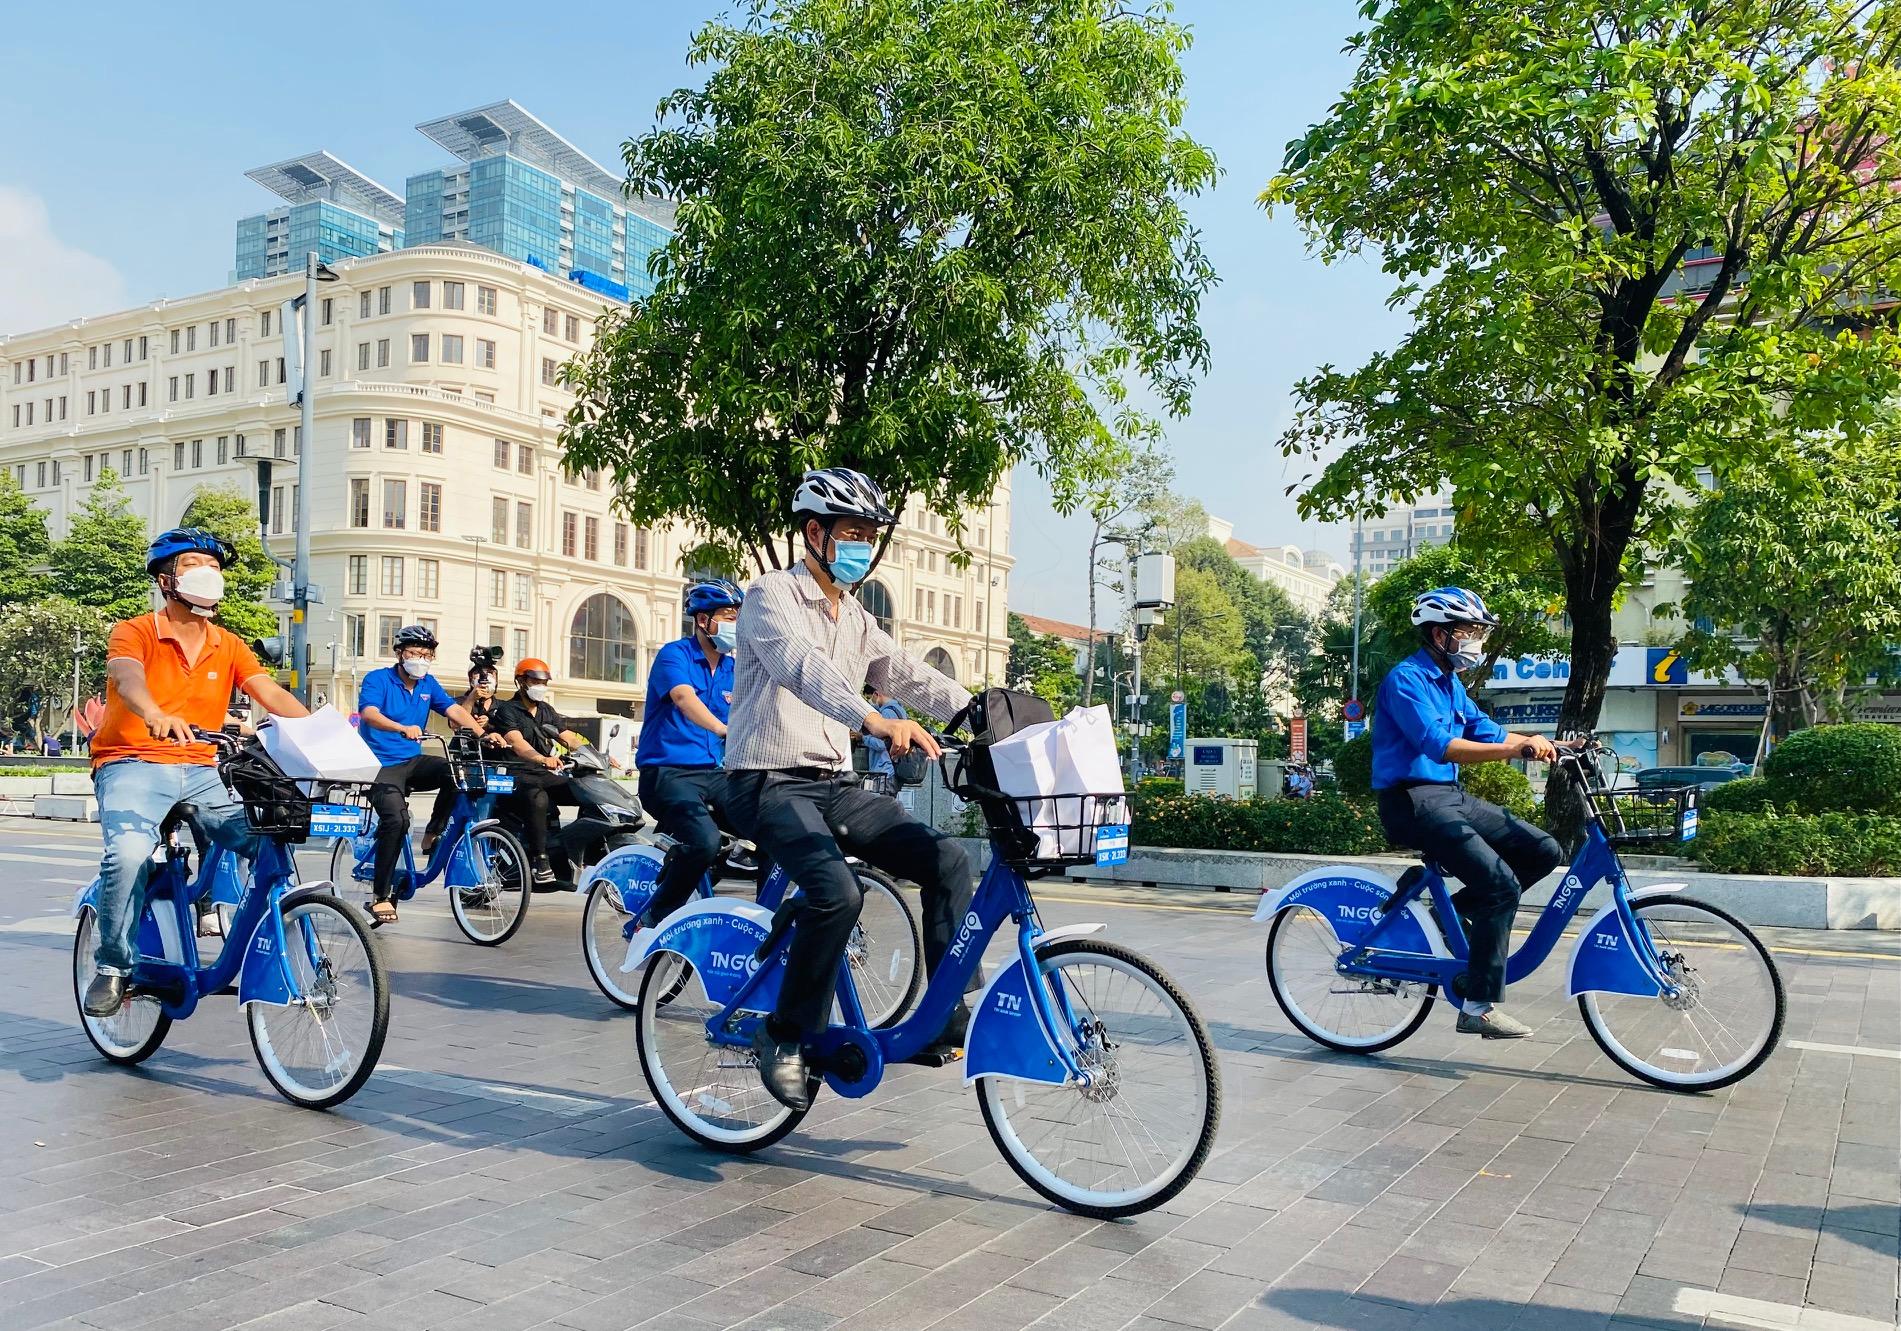 Trải nghiệm dịch vụ xe đạp công cộng tại Đà Nẵng  Cổng thông tin du lịch  thành phố Đà Nẵng